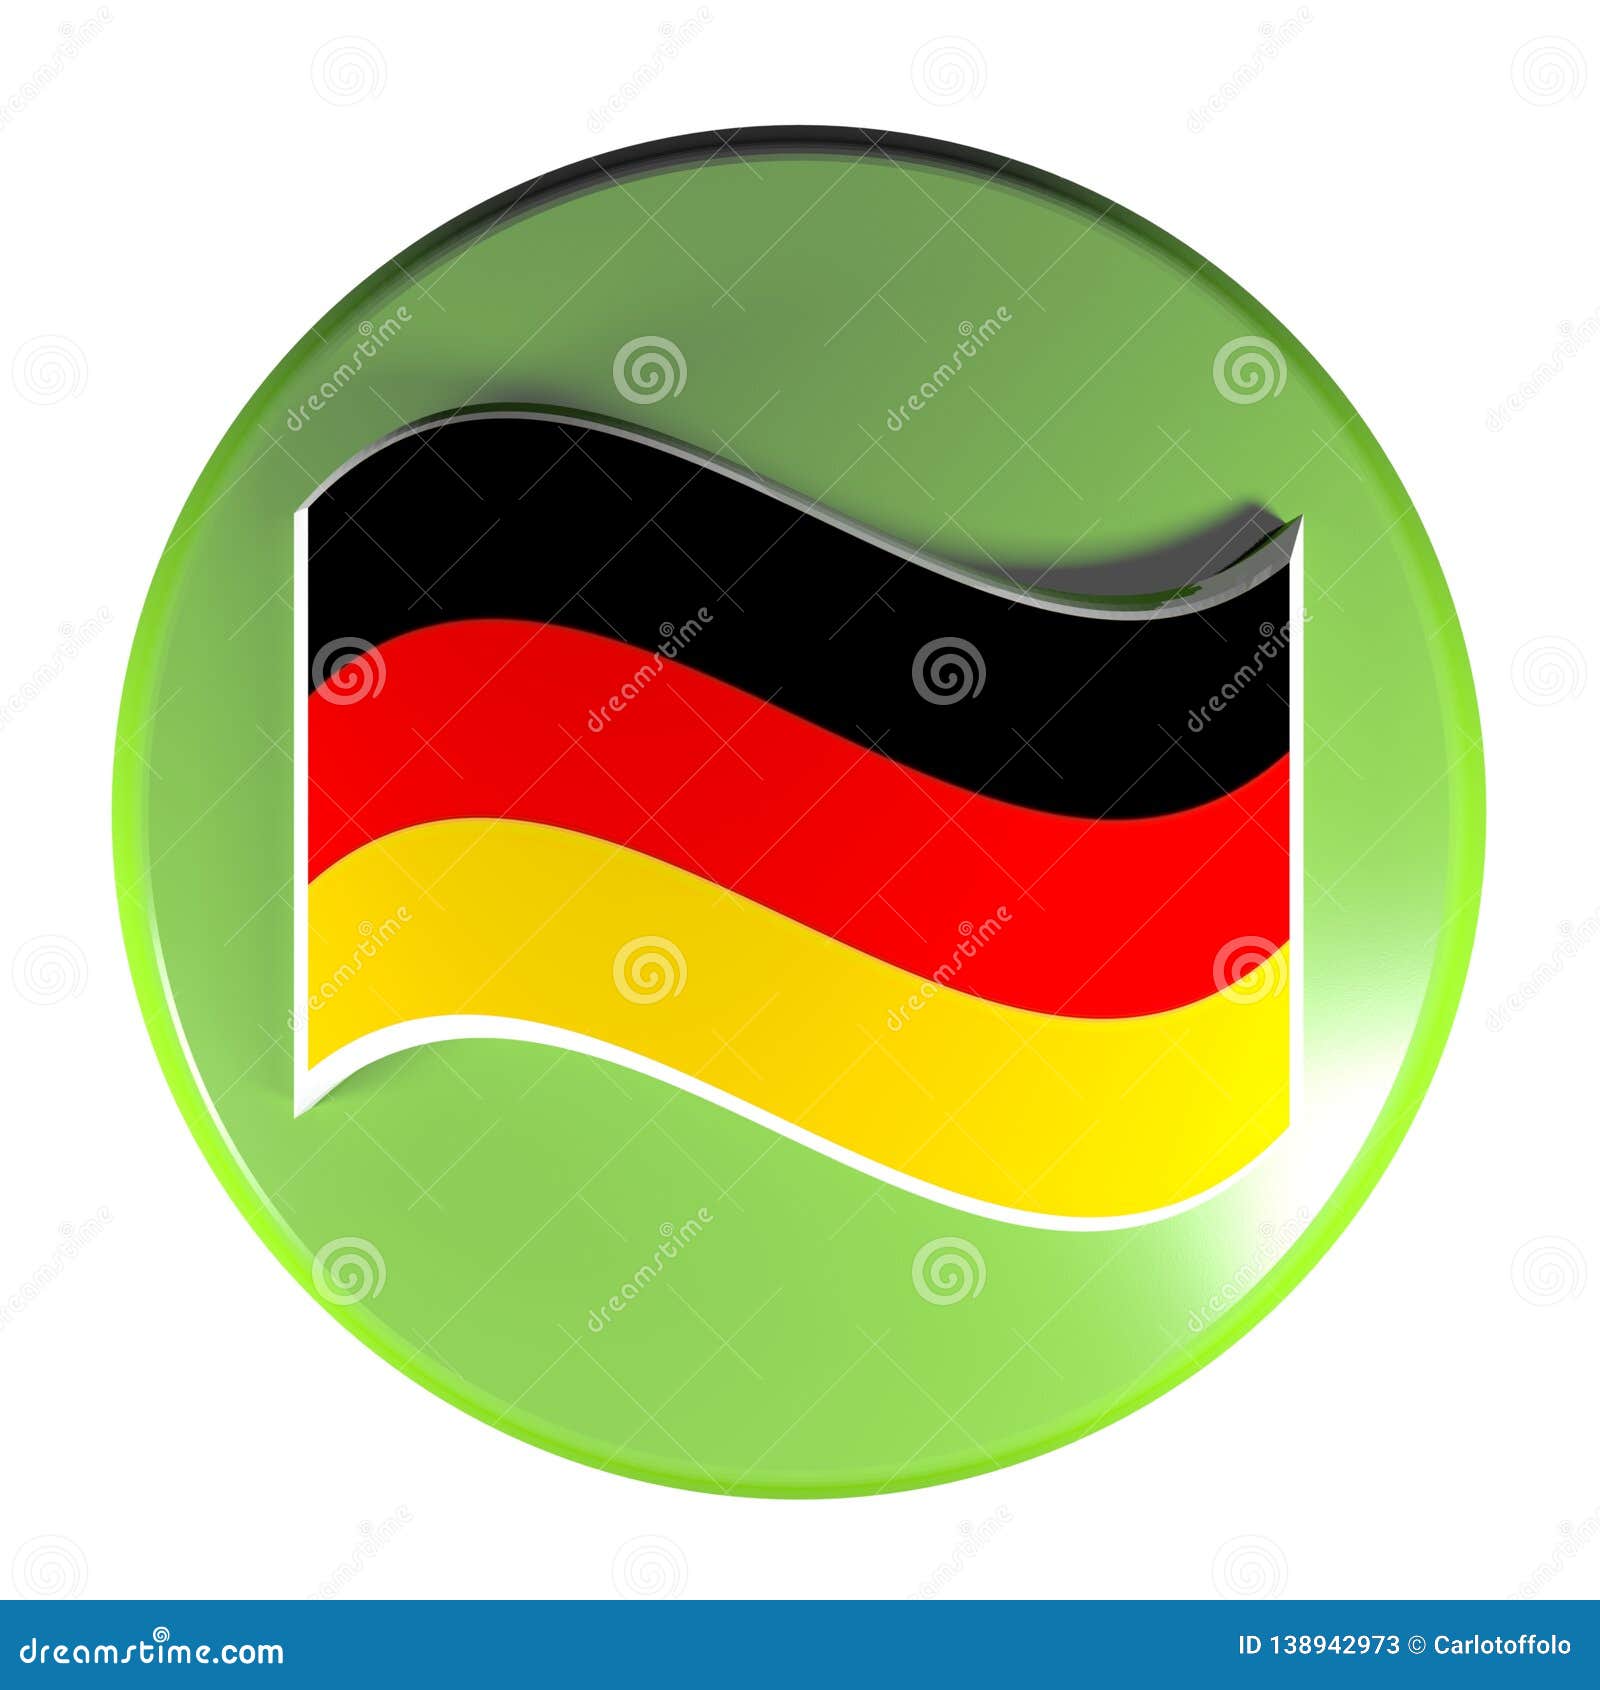 Cờ Đức là biểu tượng của nước Đức và nó rất đặc trưng. Hãy xem hình ảnh về cờ Đức để tìm hiểu thêm về đất nước này, với nền văn hóa đa dạng và kinh tế mạnh mẽ.